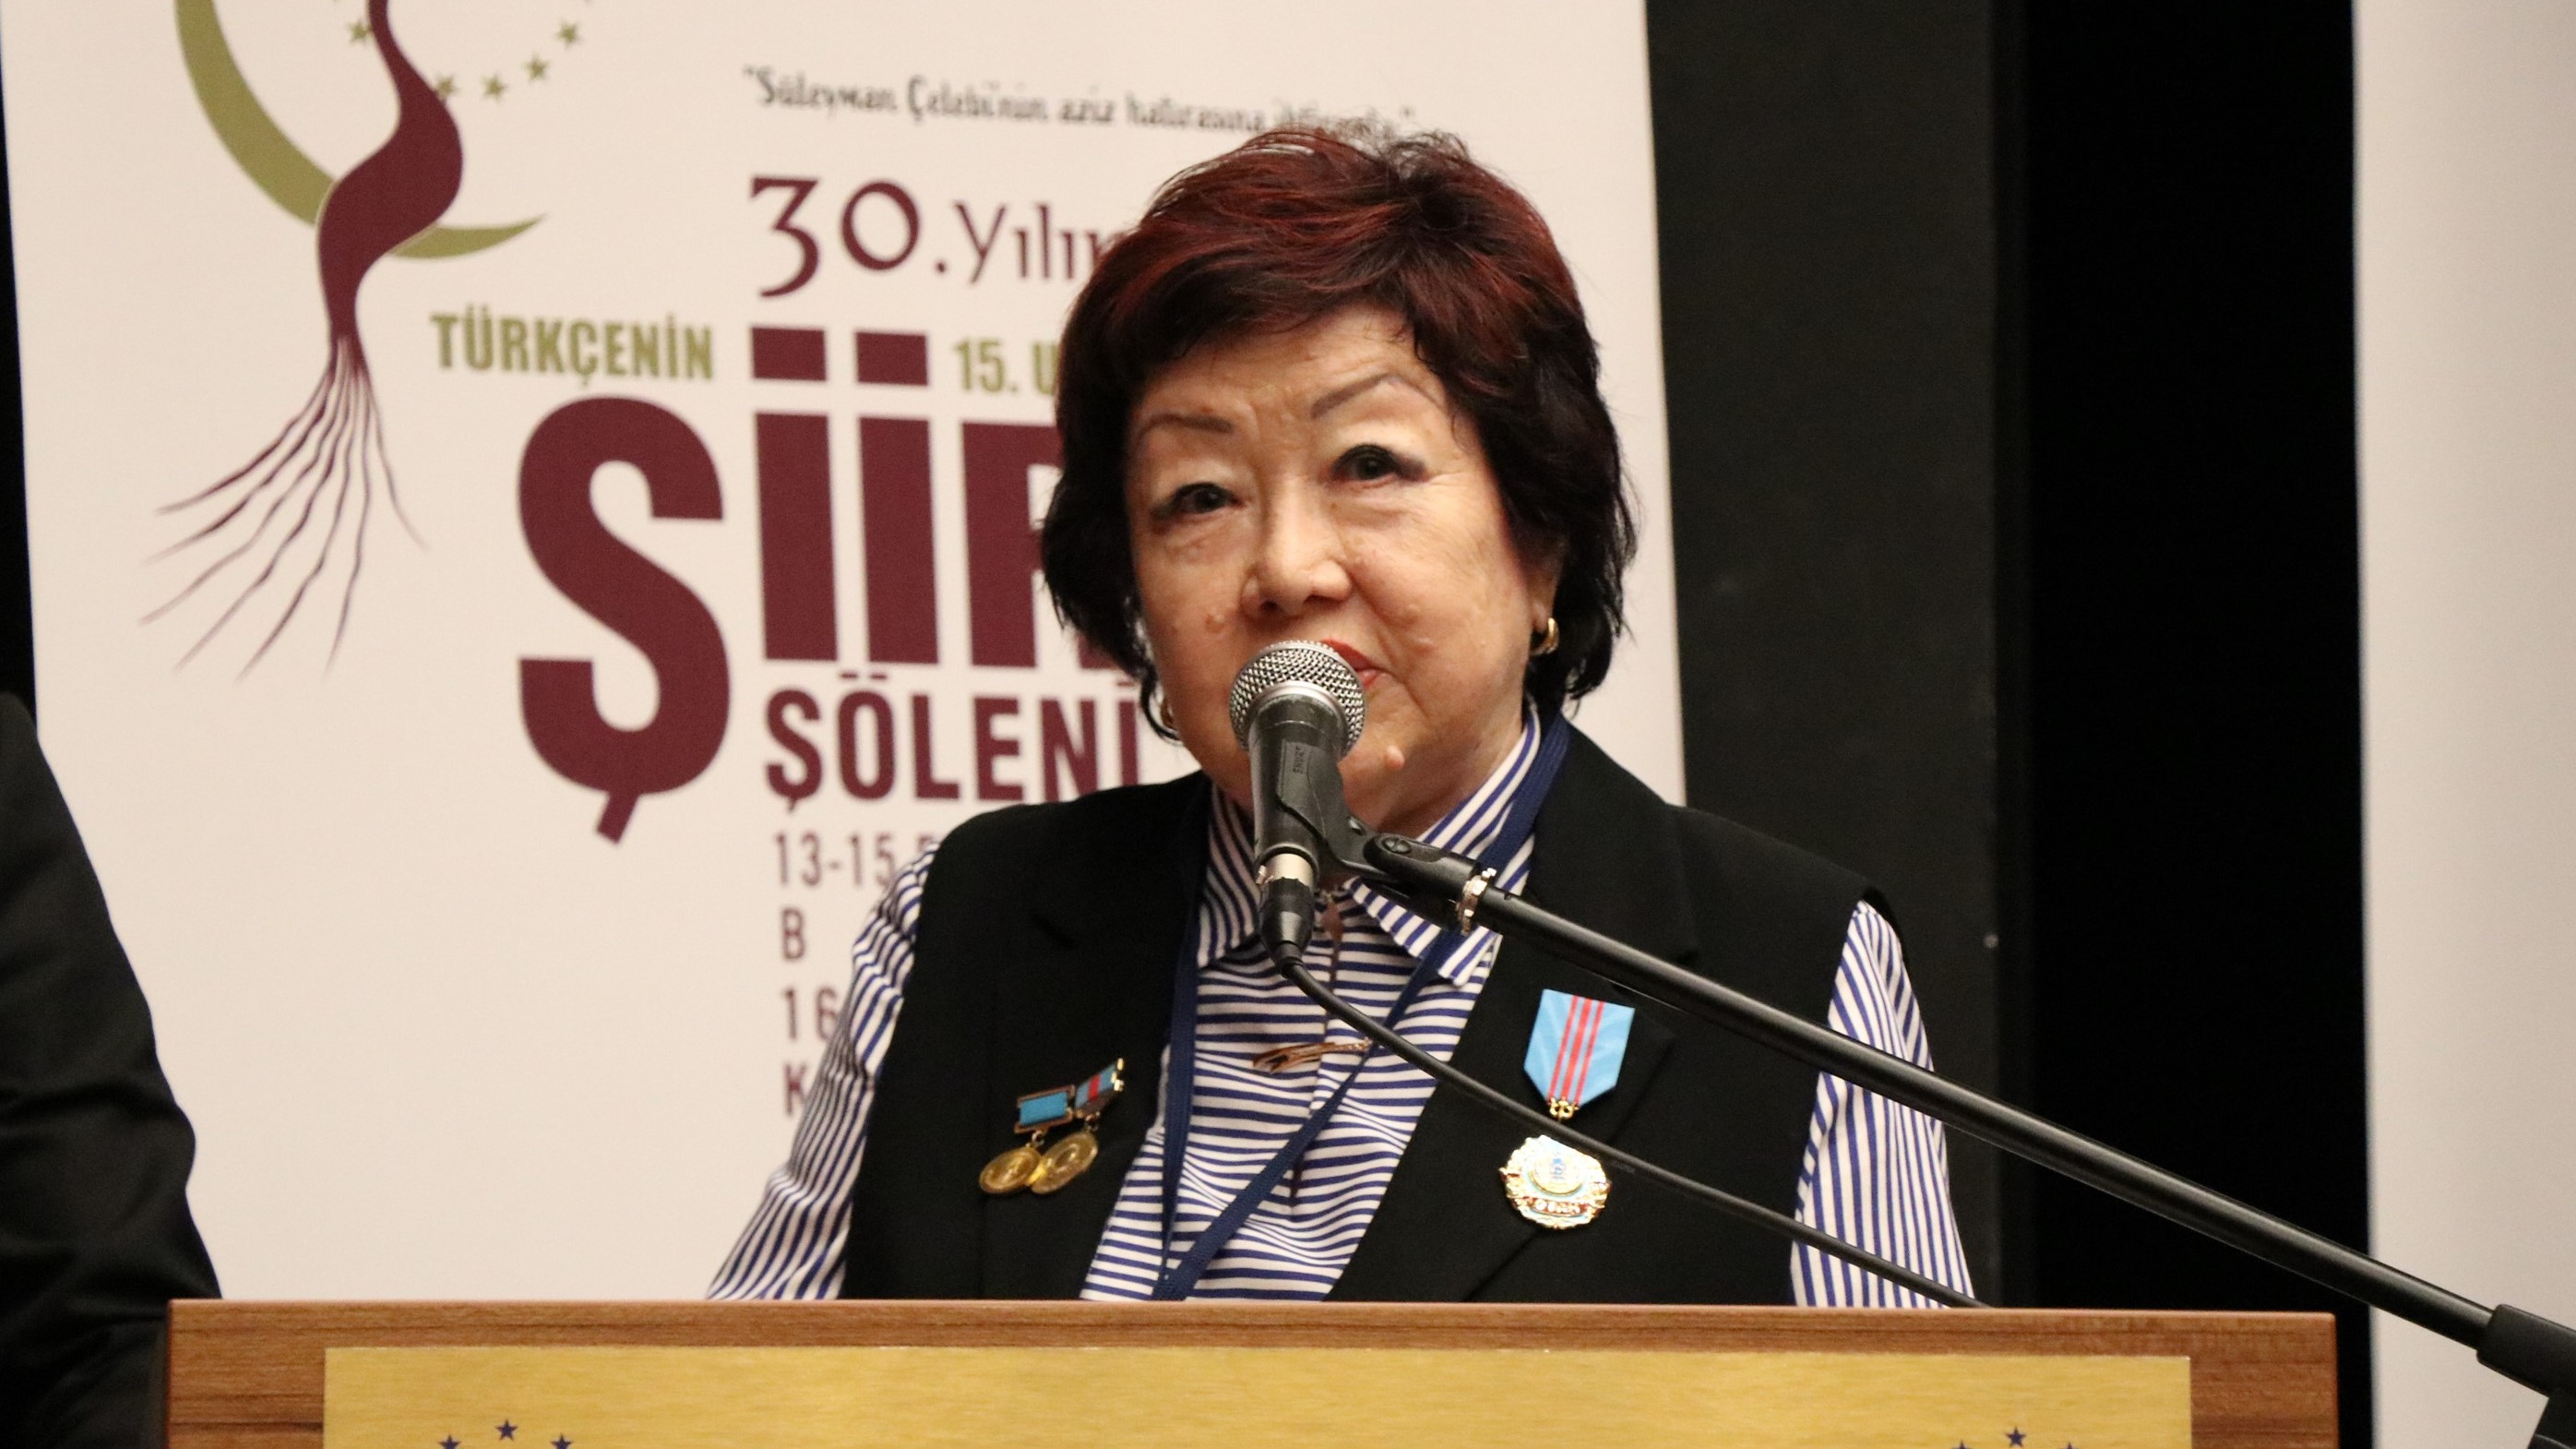 Akushtap Baktygareeva: Yesevî mekanı Kazakistan'dan selamlar